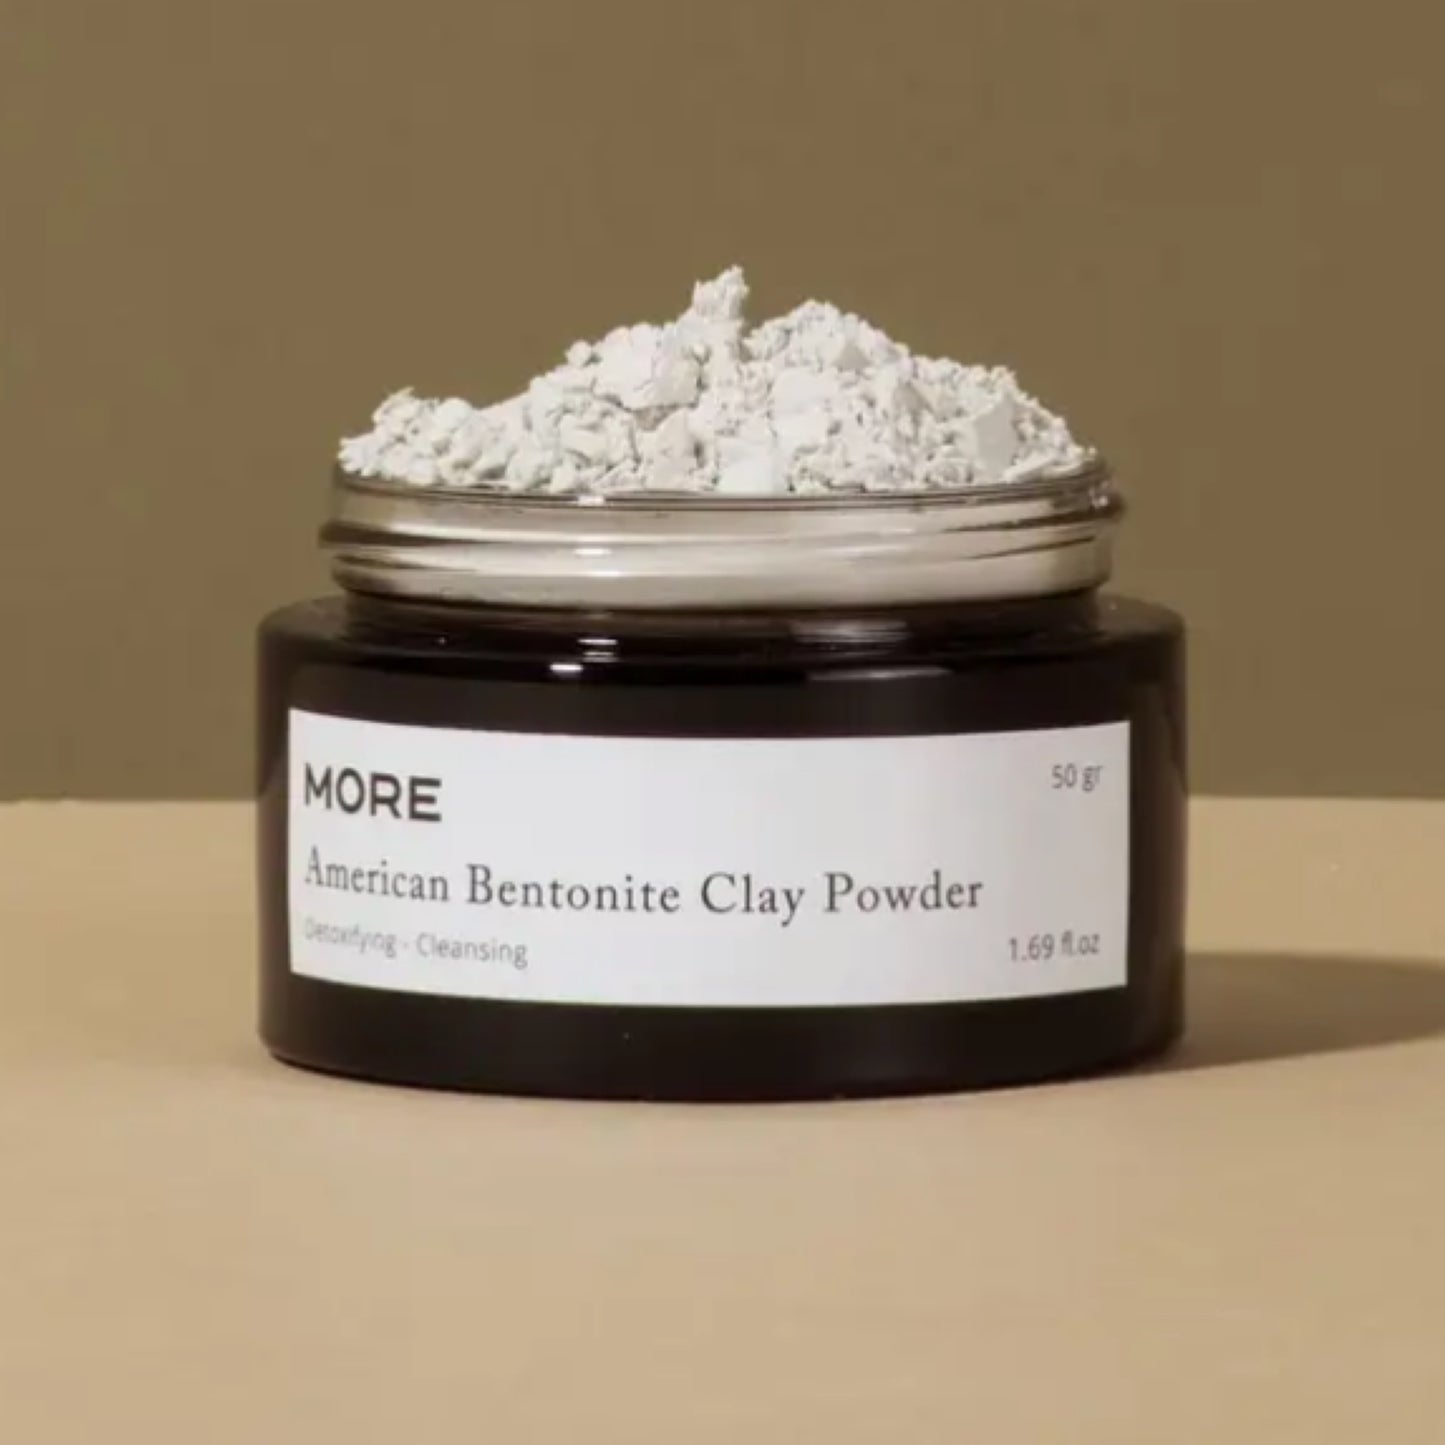 American Bentonite Clay Powder